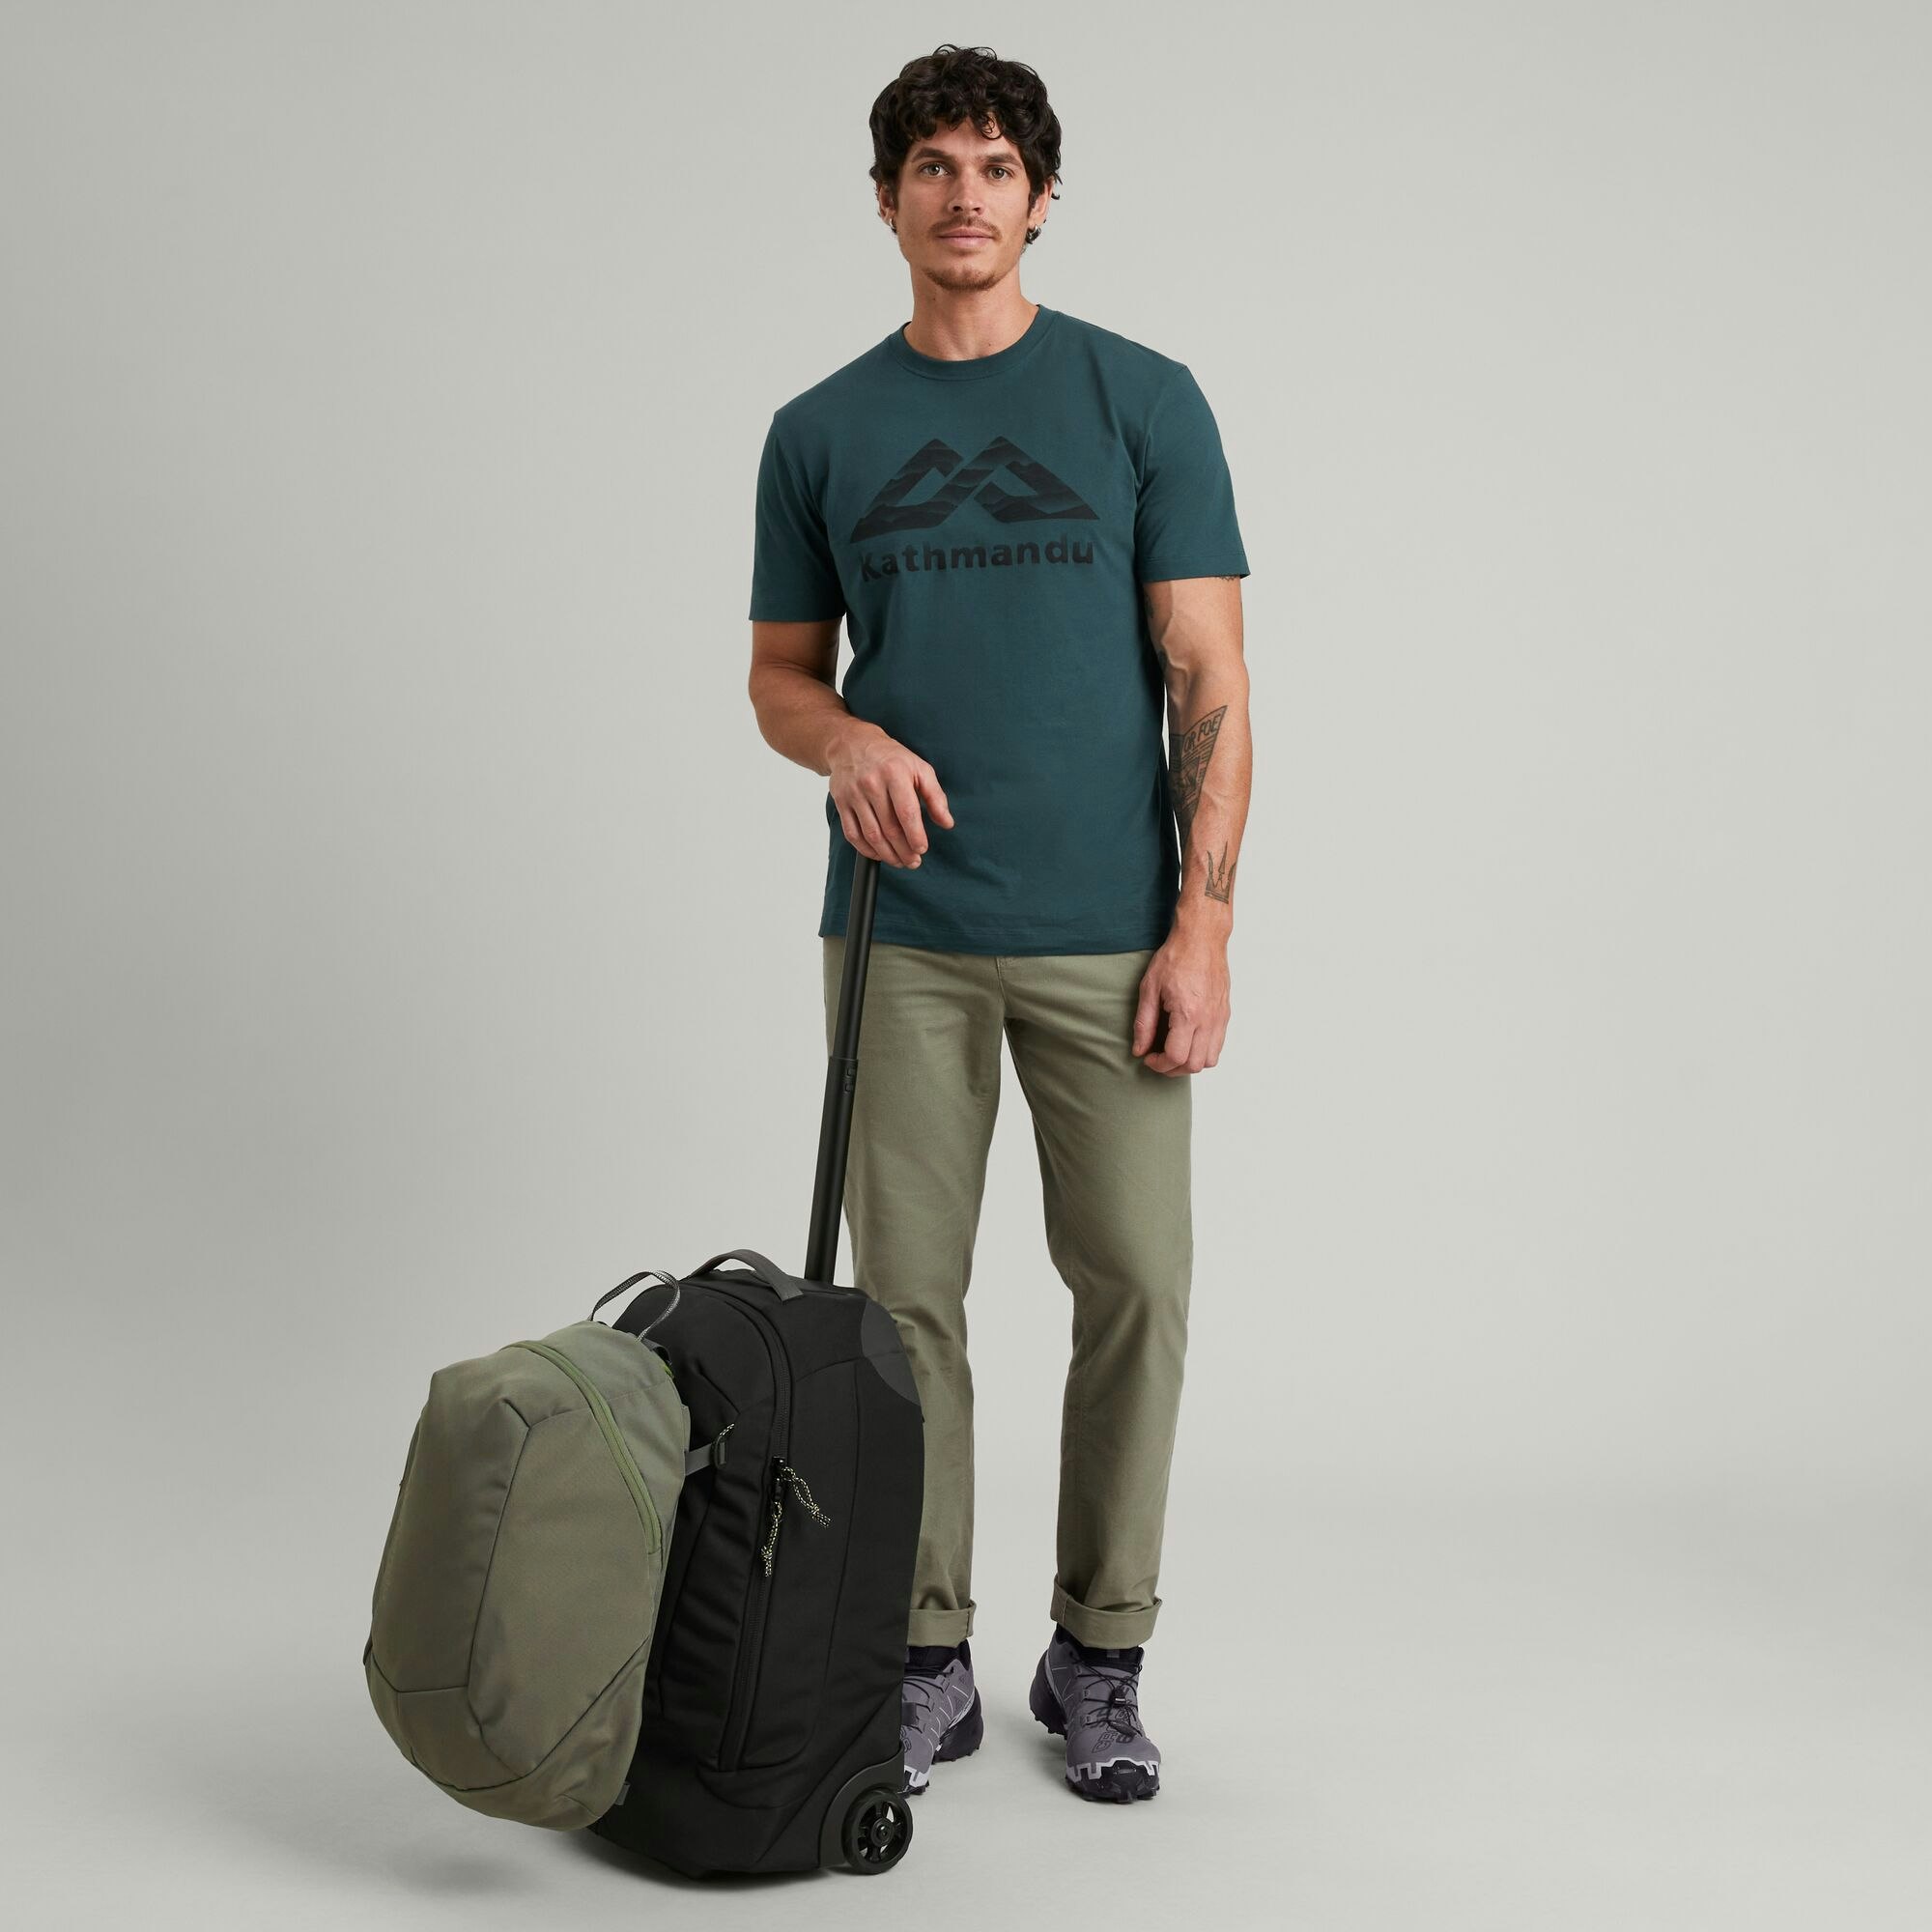 Cotopaxi Allpa 50L Duffel Bag - Travel bag